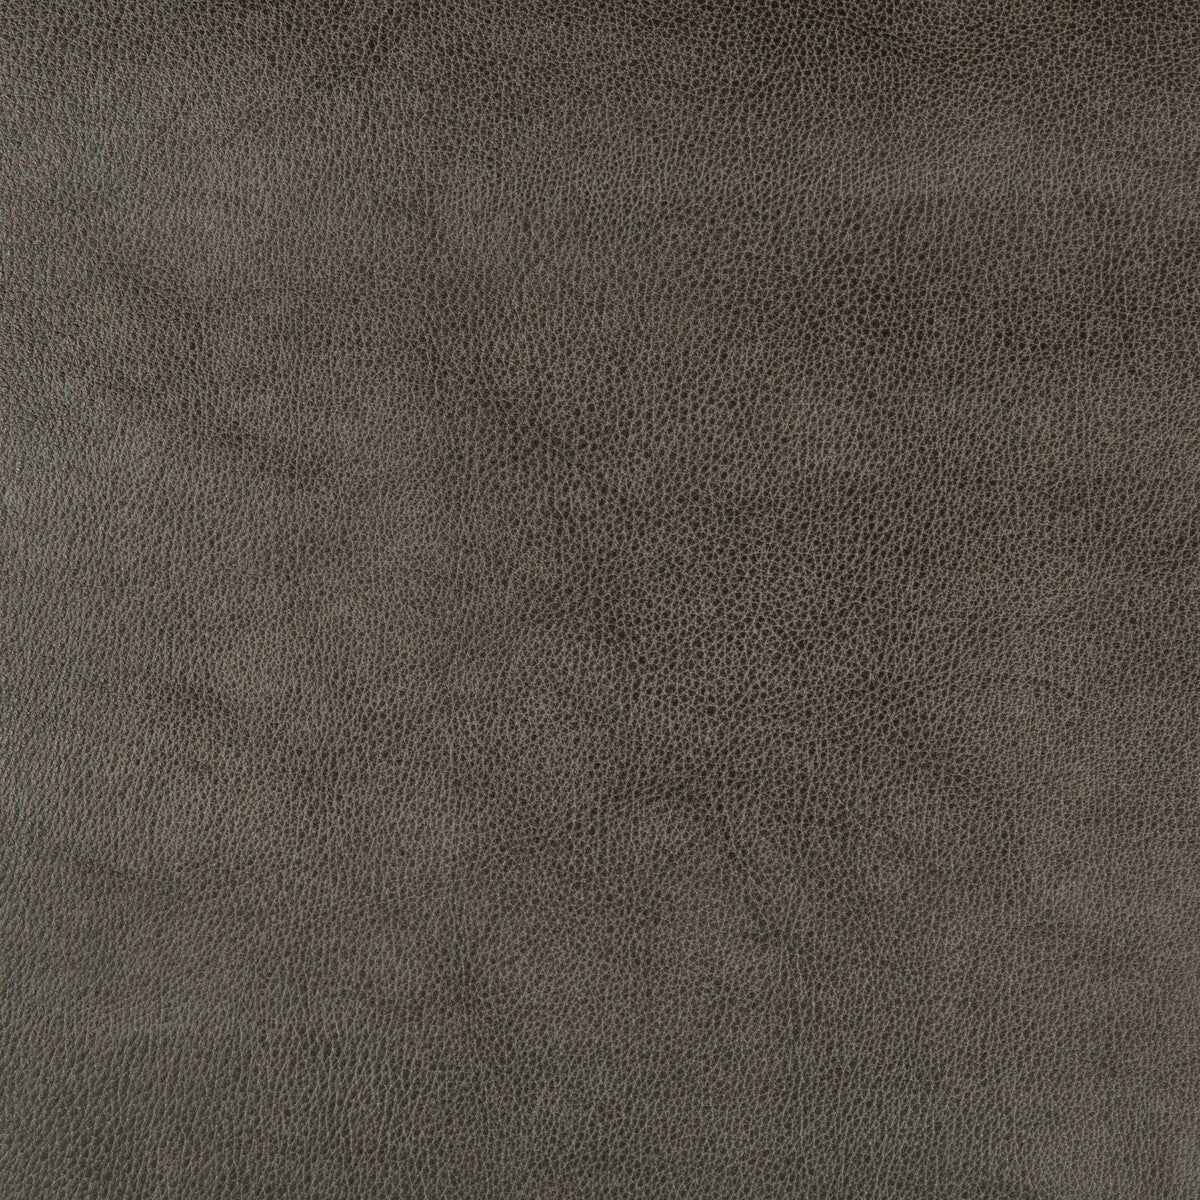 Kravet Design fabric in dust-21 color - pattern DUST.21.0 - by Kravet Design